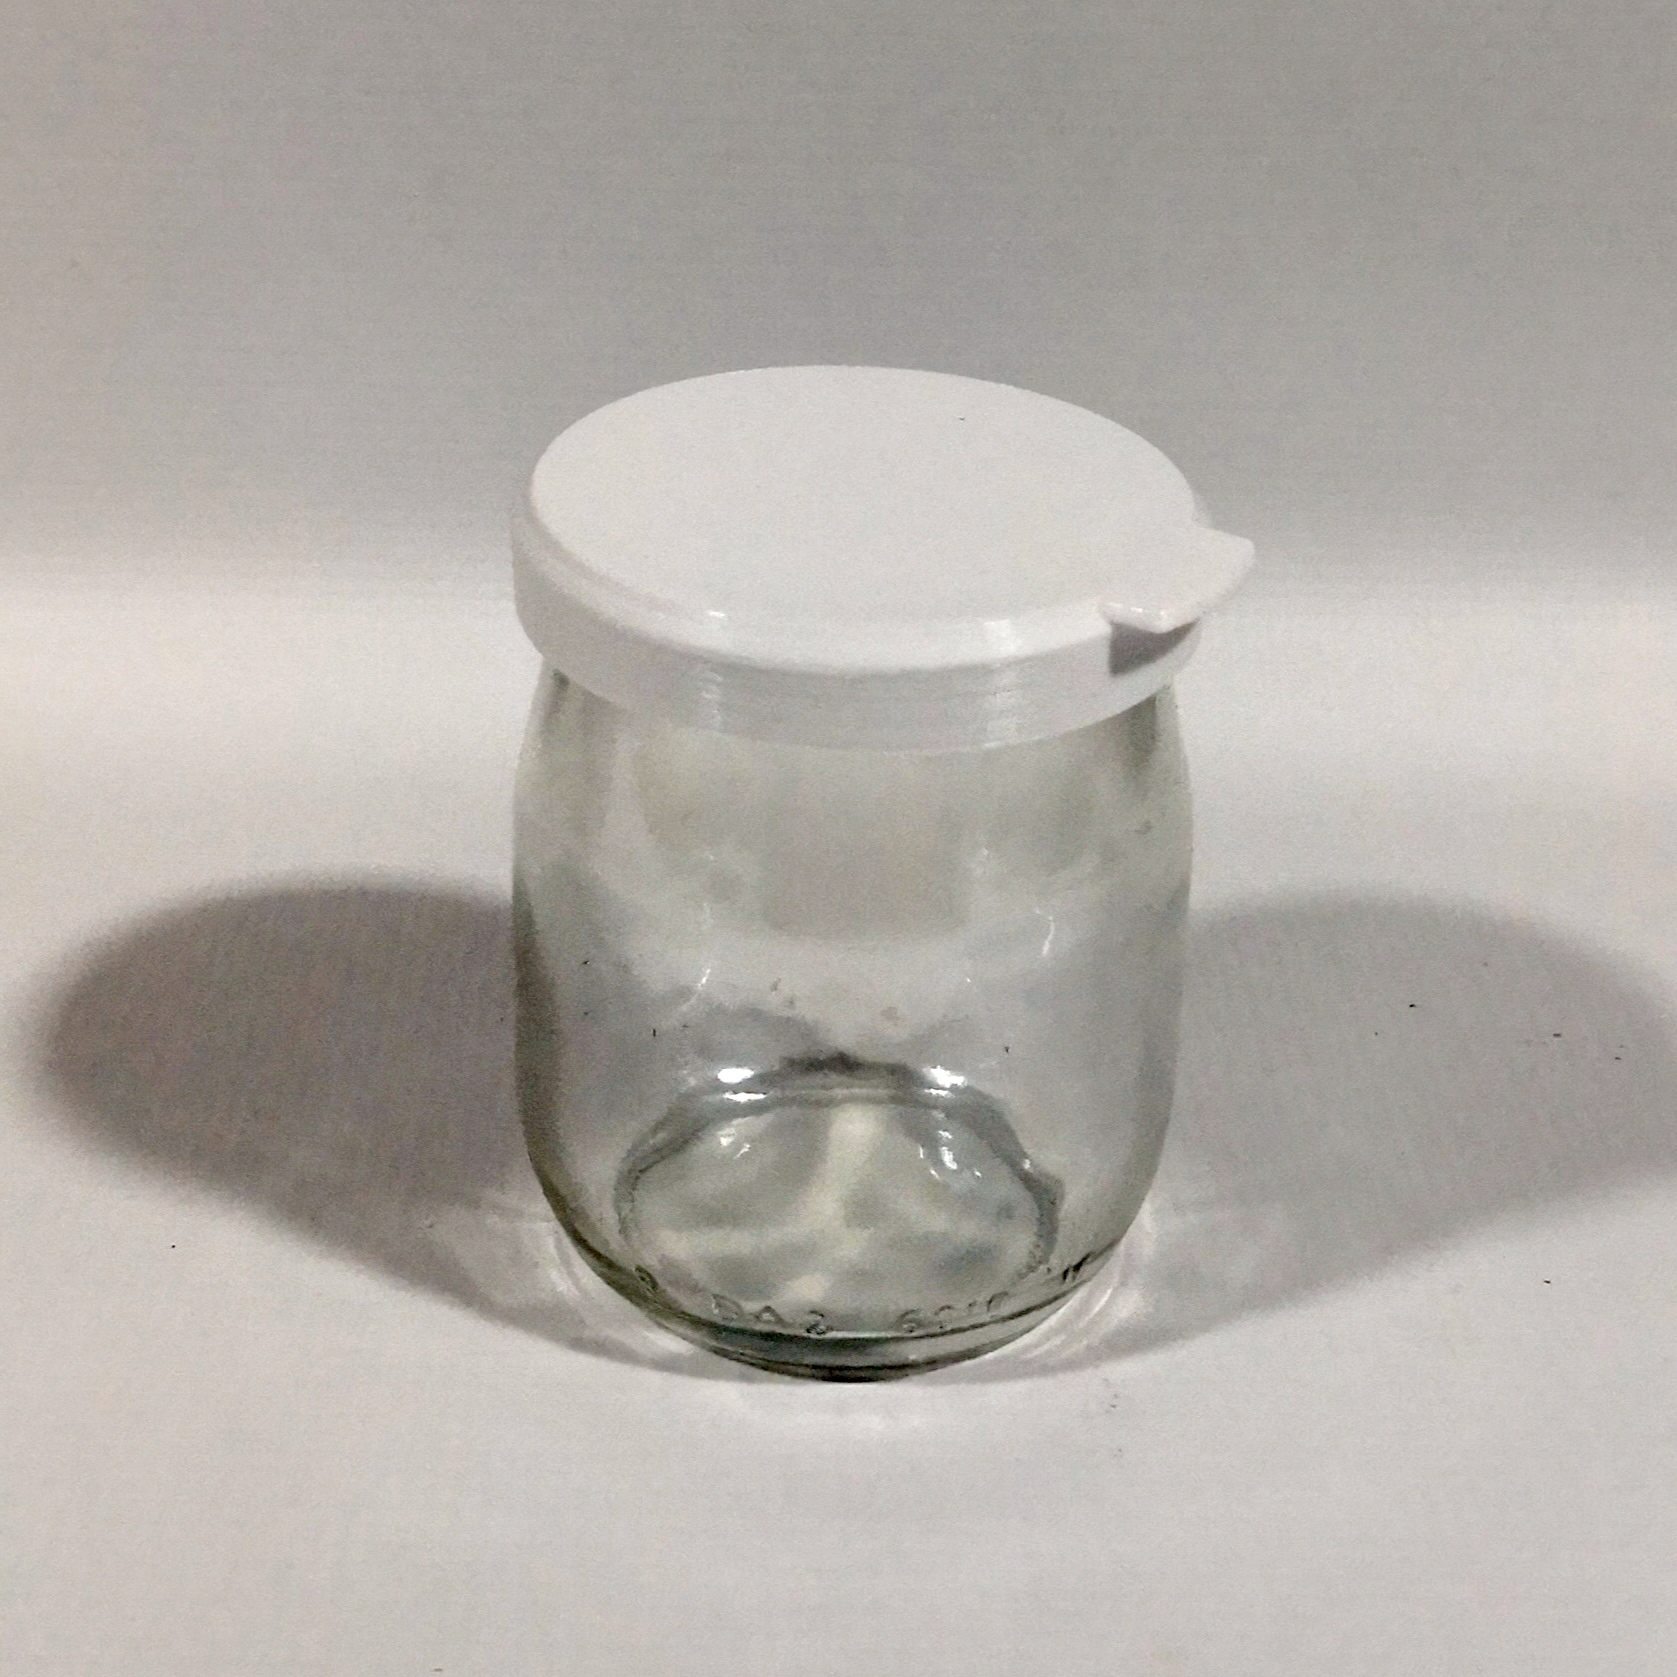 Couvercle Gris argent pour yaourt en verre, à partir de 1€ – NB-Conception